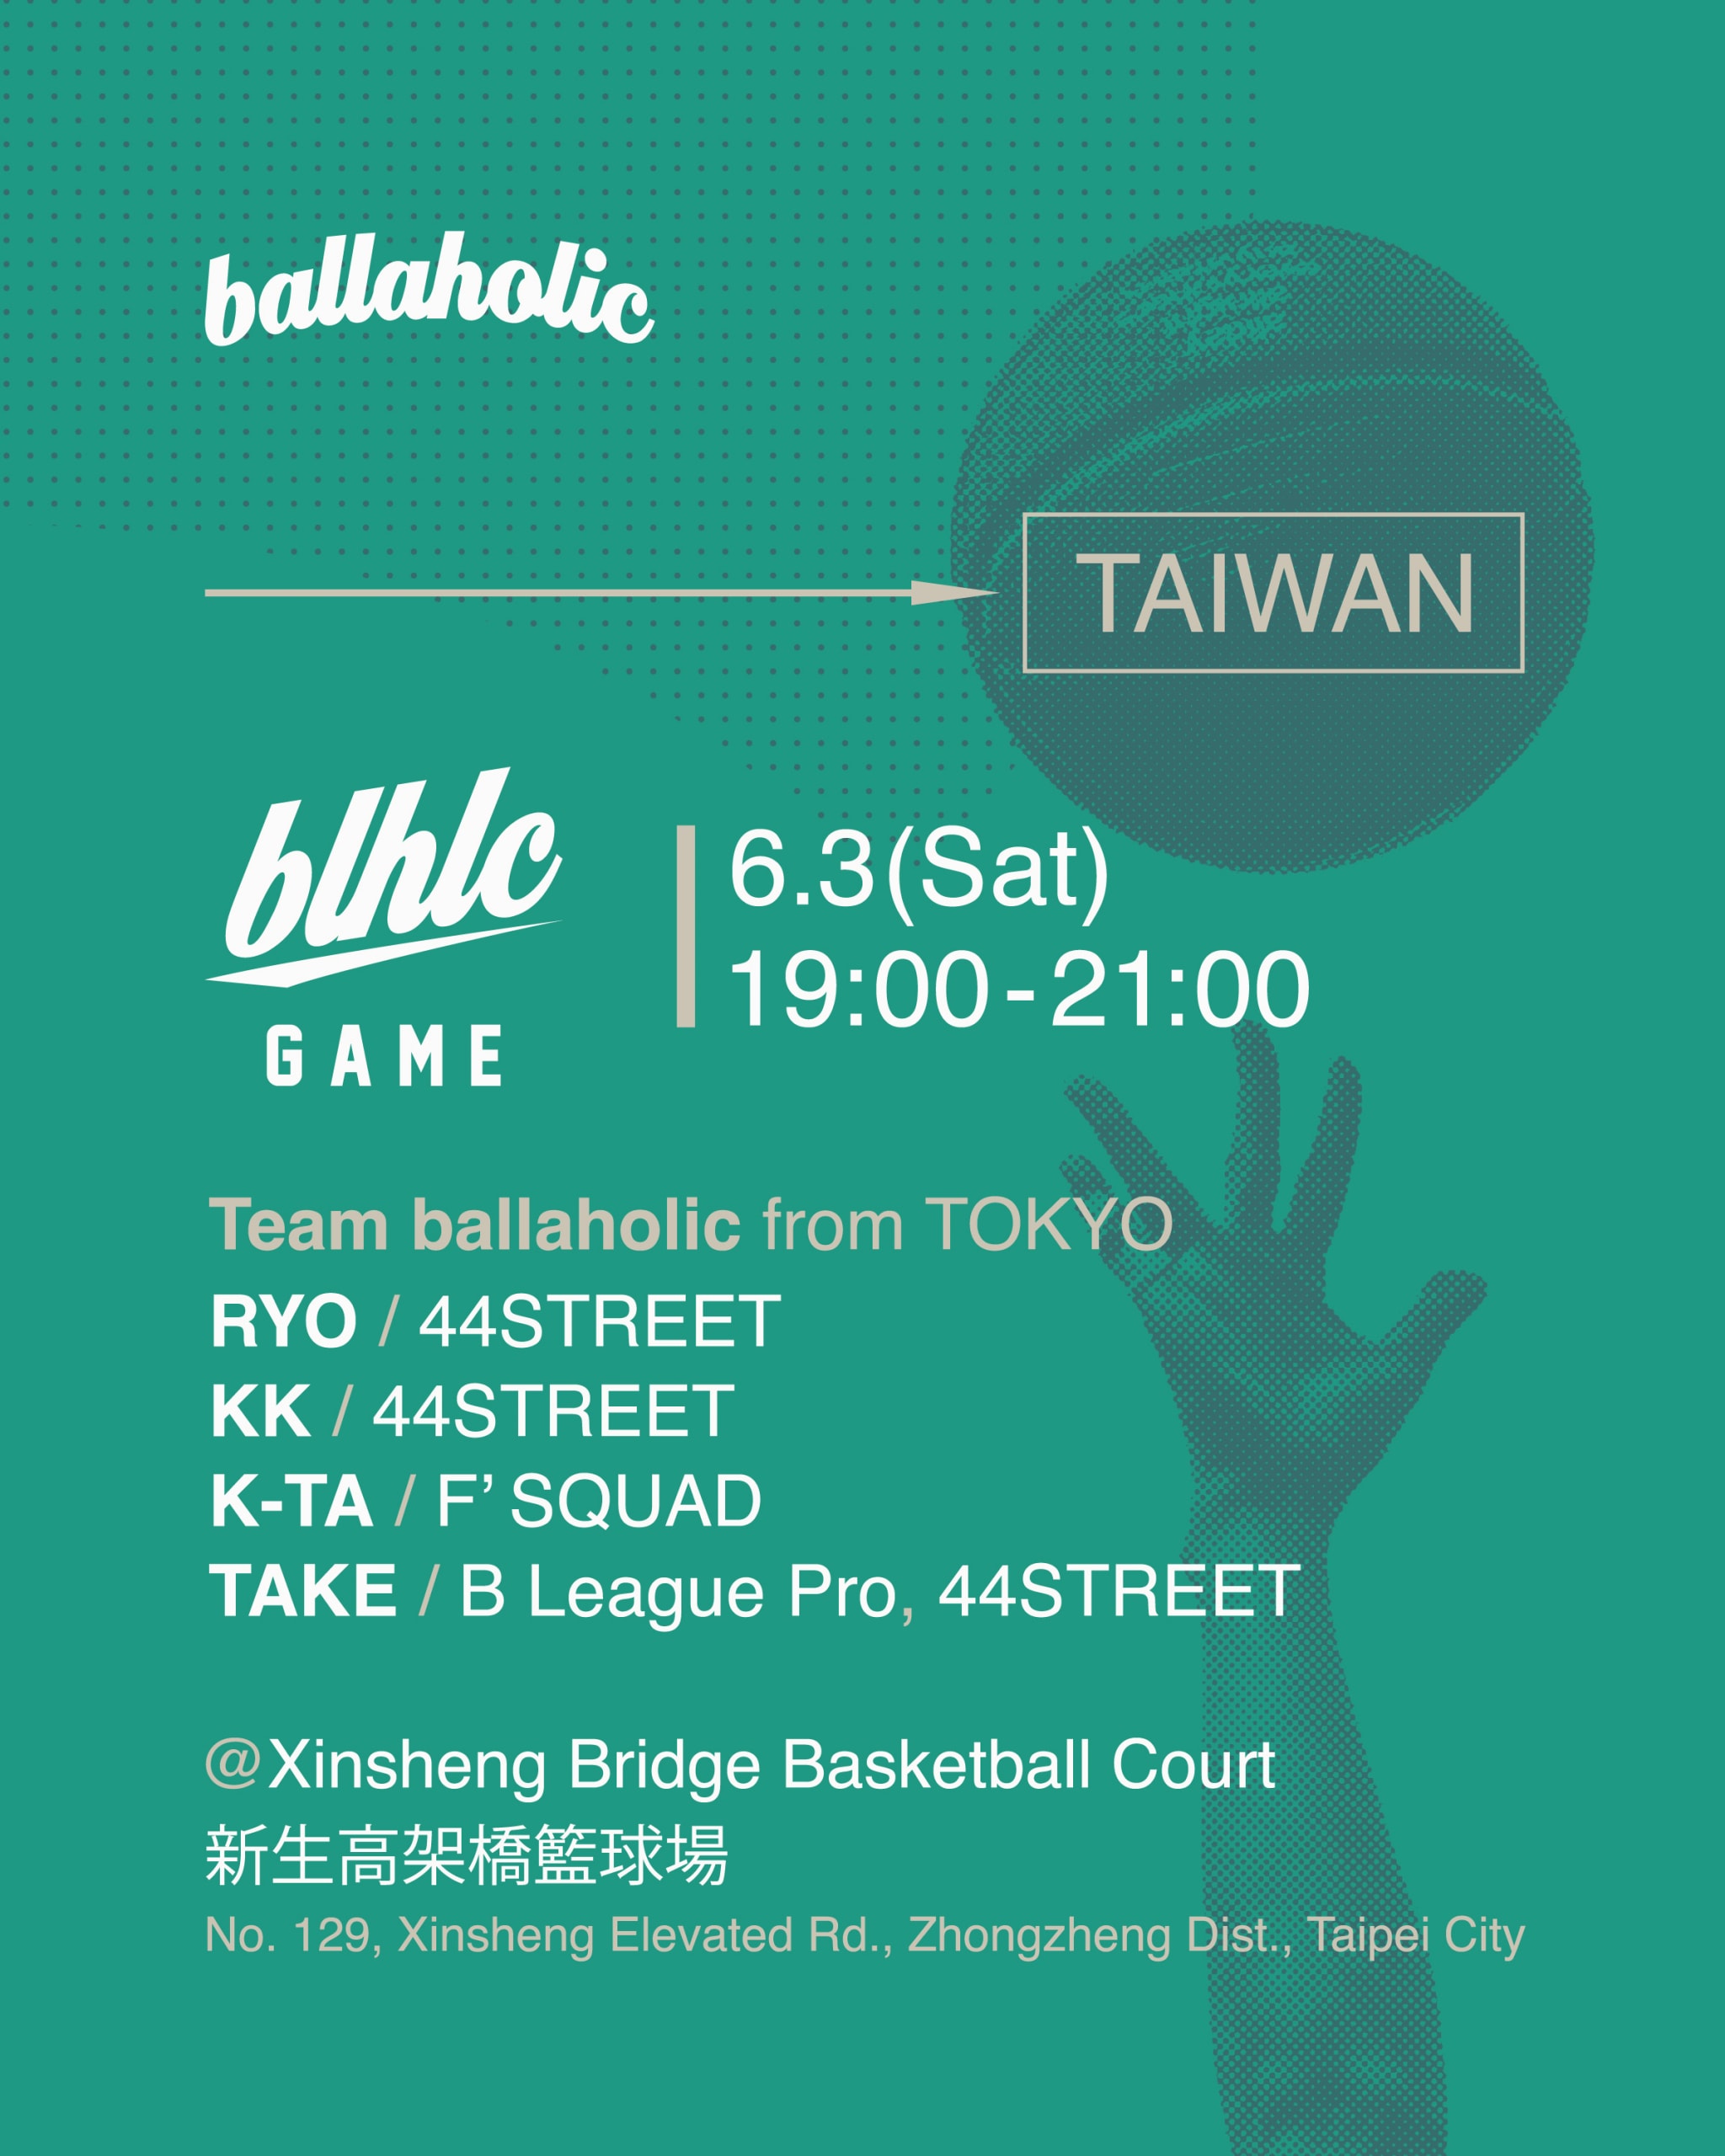 日本街頭籃球品牌 ballaholic 最新 Pop-Up 期間限定店即將登陸台灣